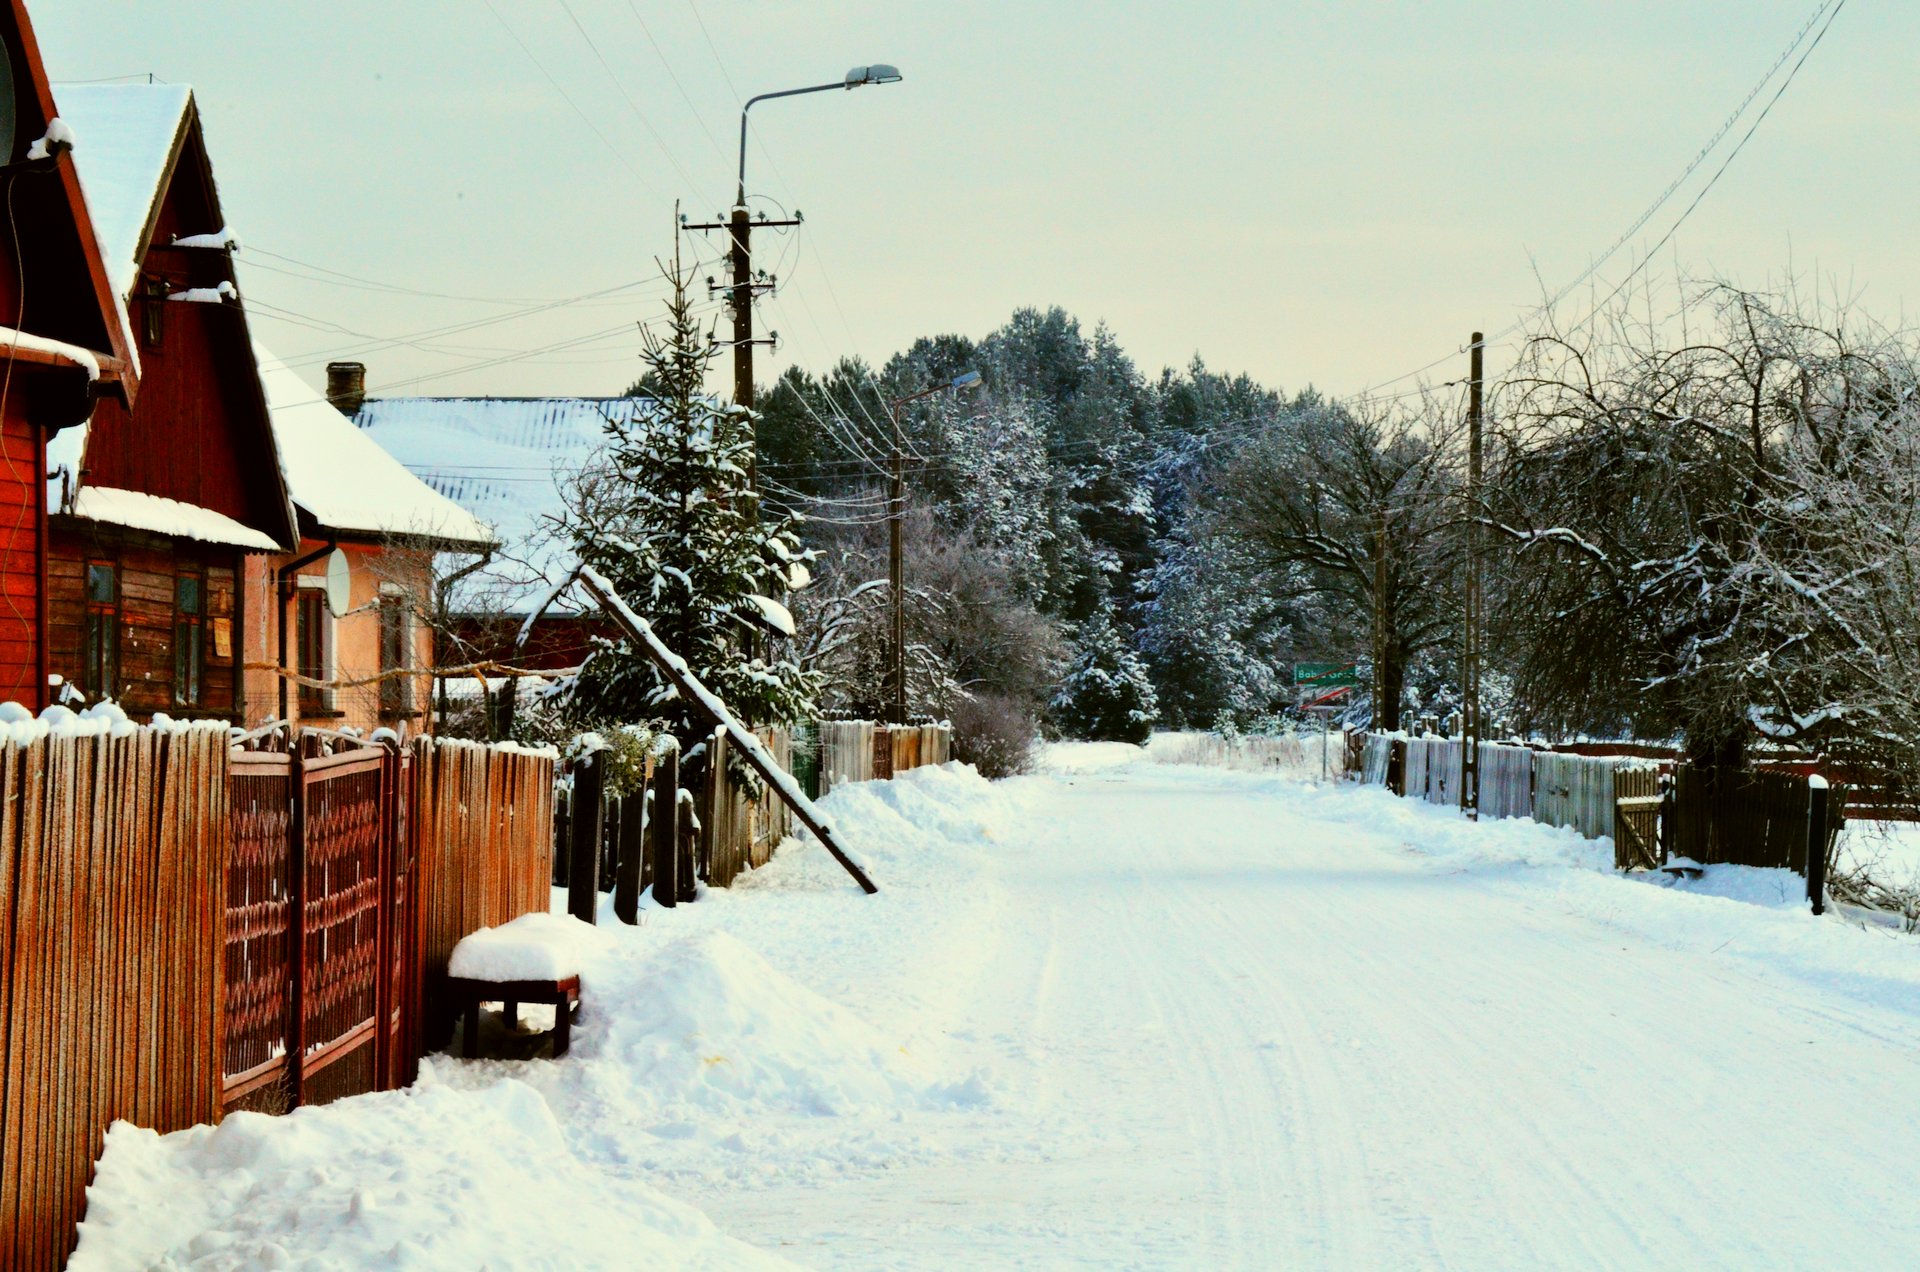 zima wieś śniegfree photo darmowe zdjęcie